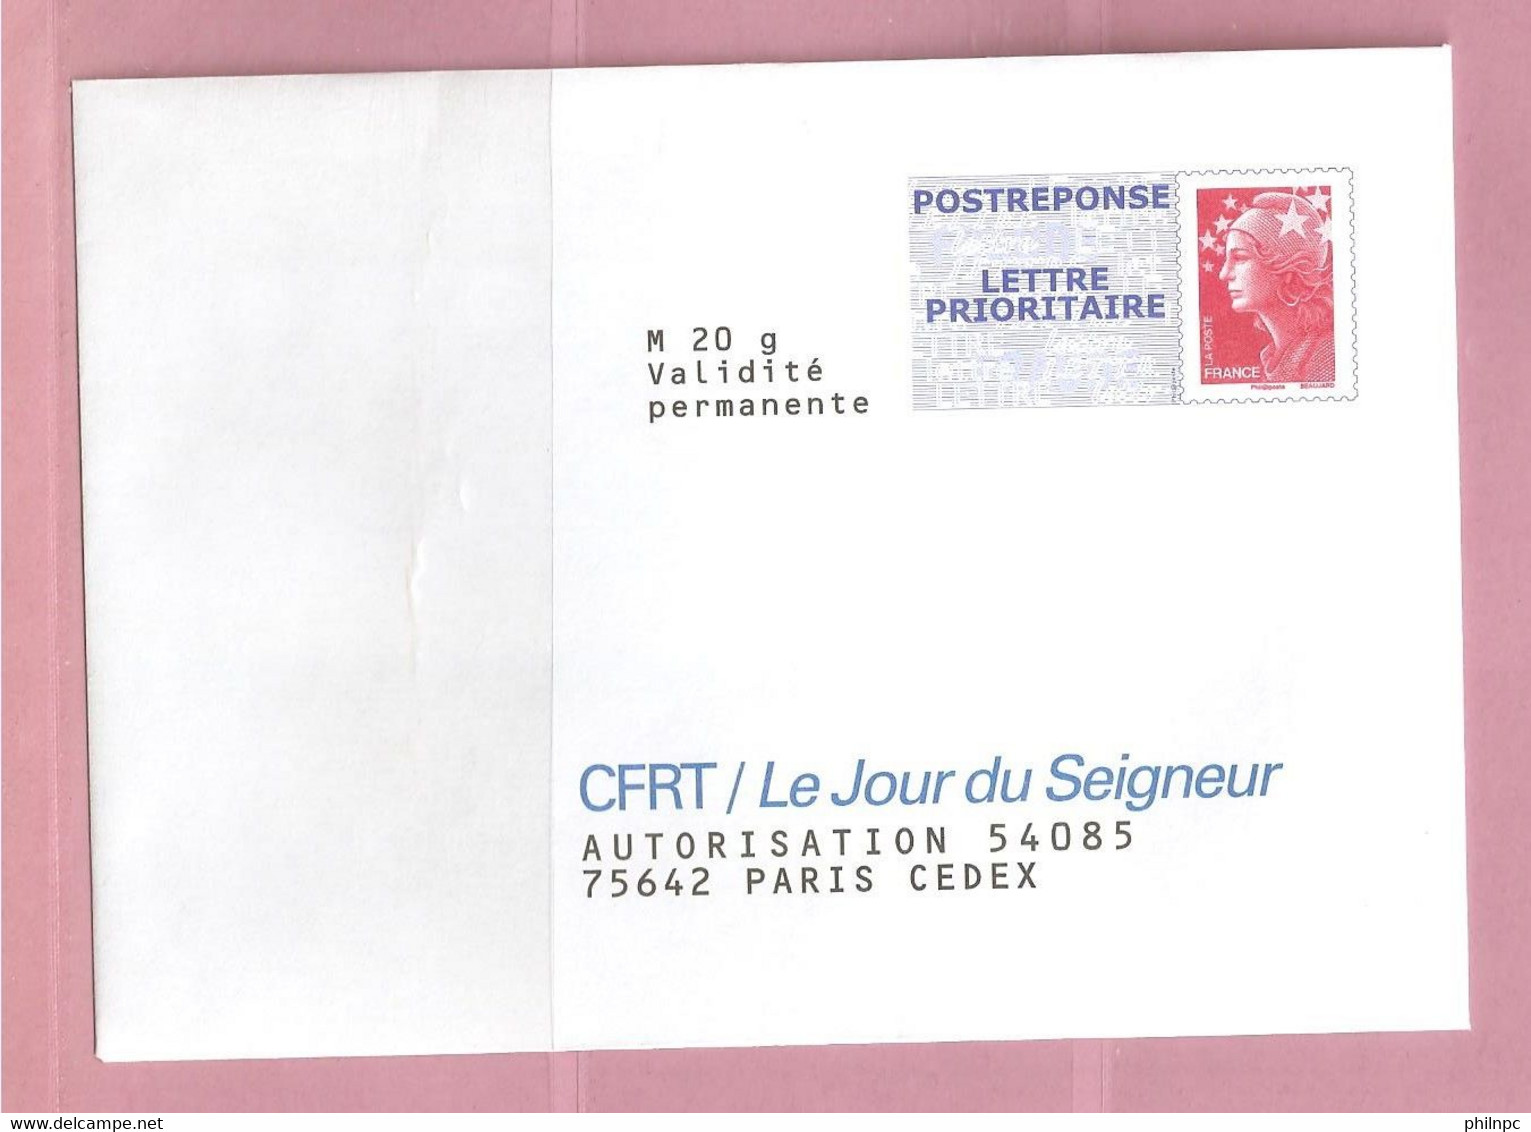 France, Prêt à Poster Réponse, 4230, Postréponse, CFRT Le Jour Du Seigneur, Marianne De Beaujard - Listos Para Enviar: Respuesta /Beaujard